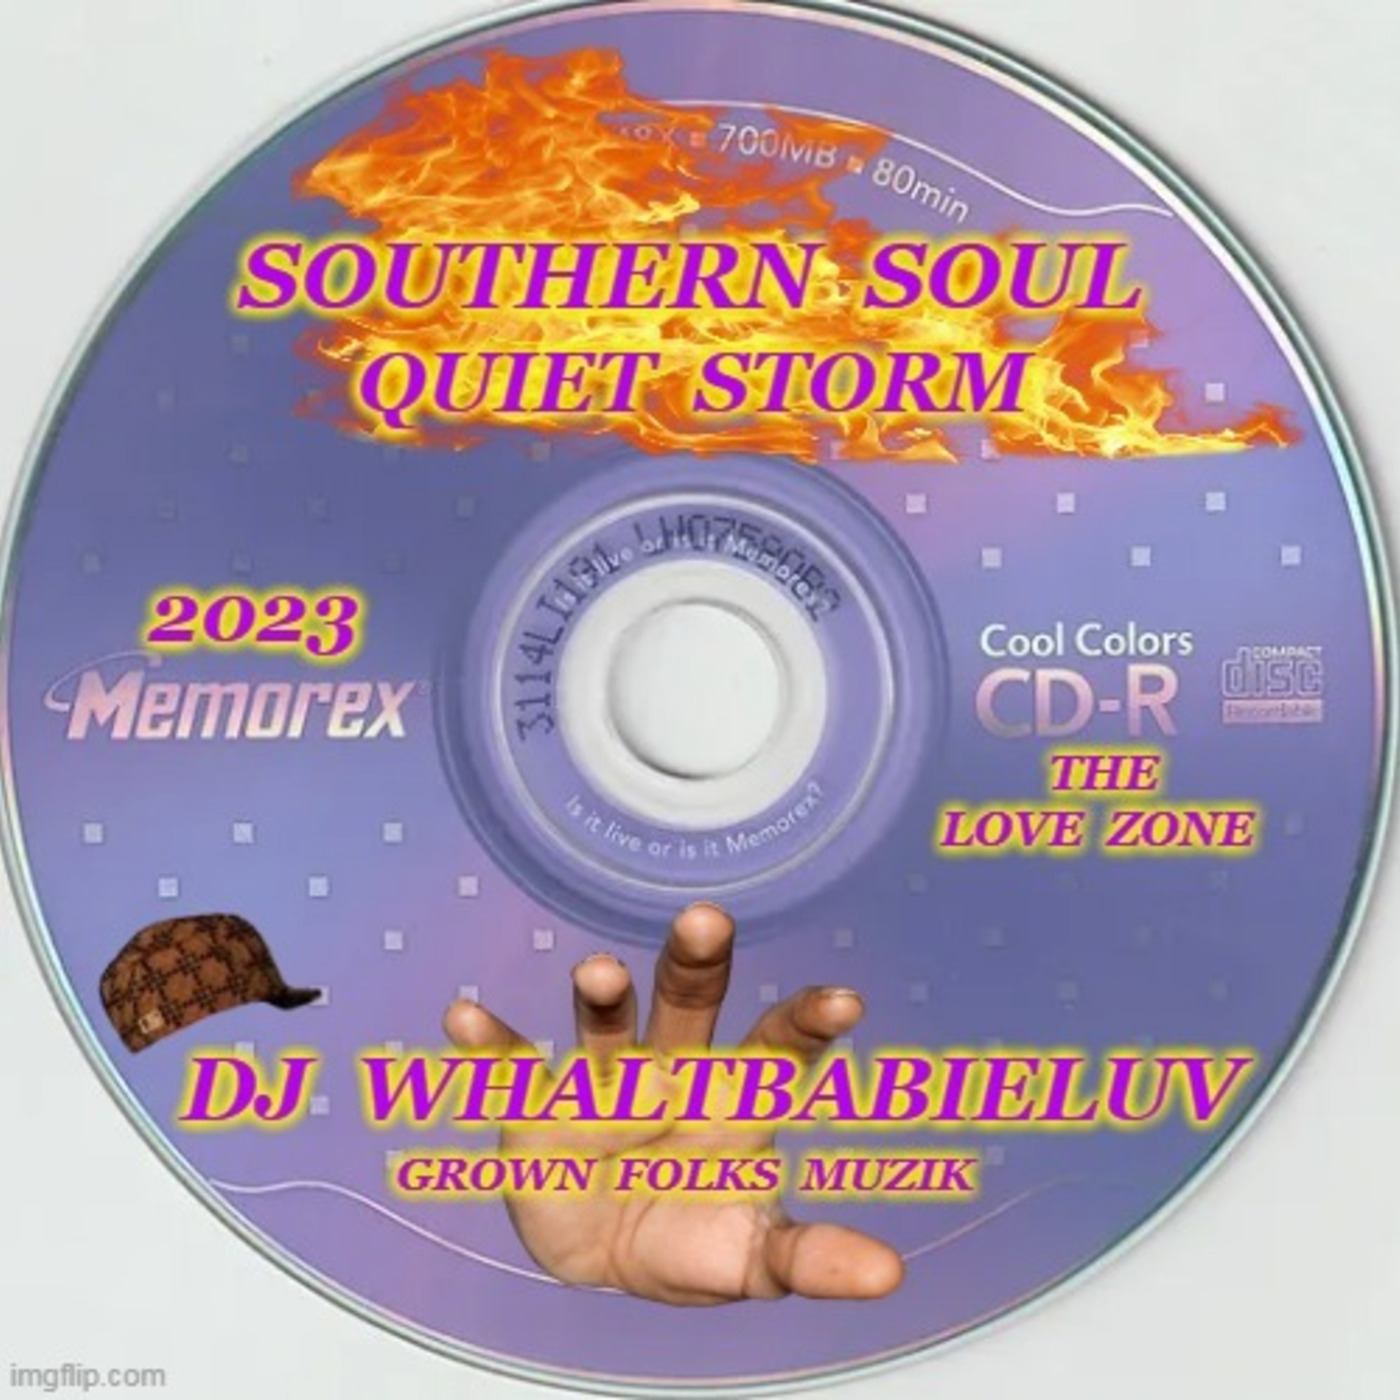 Southern Soul / R&B  Quiet Storm 2023 (Dj WhaltBabieLuv)